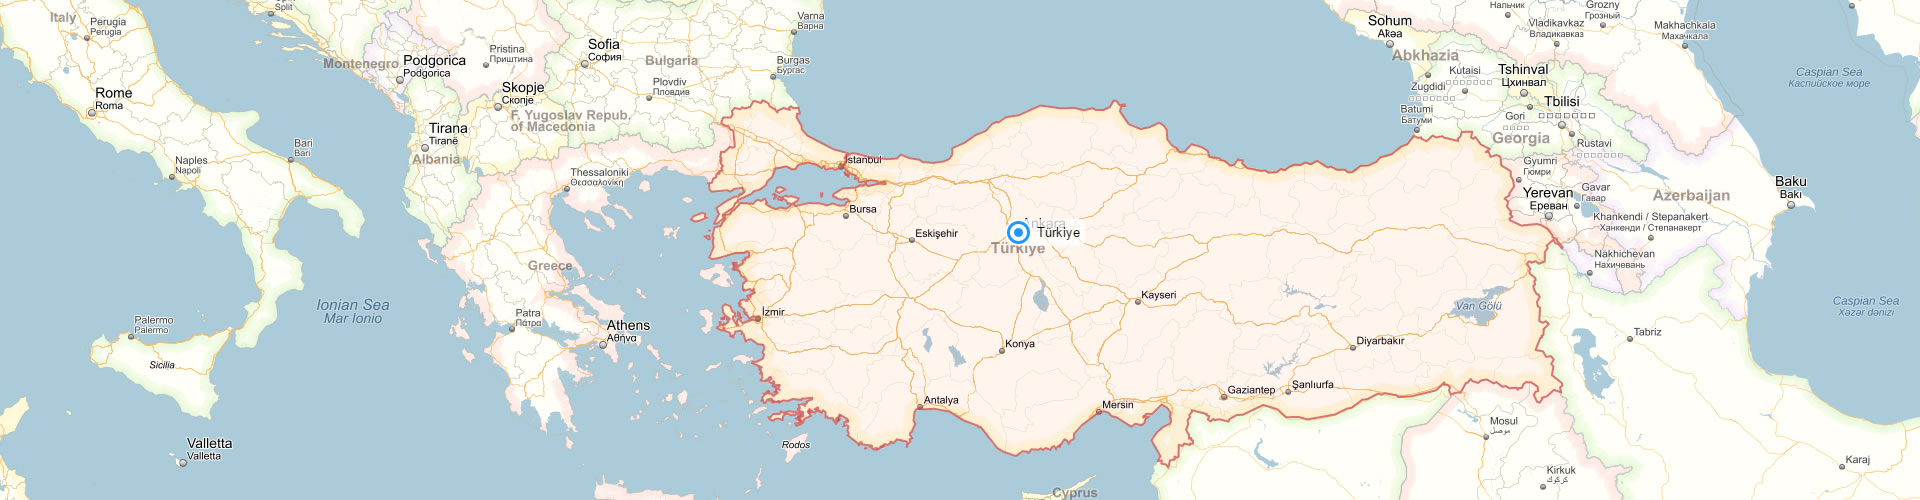 turkei land grenzen karte